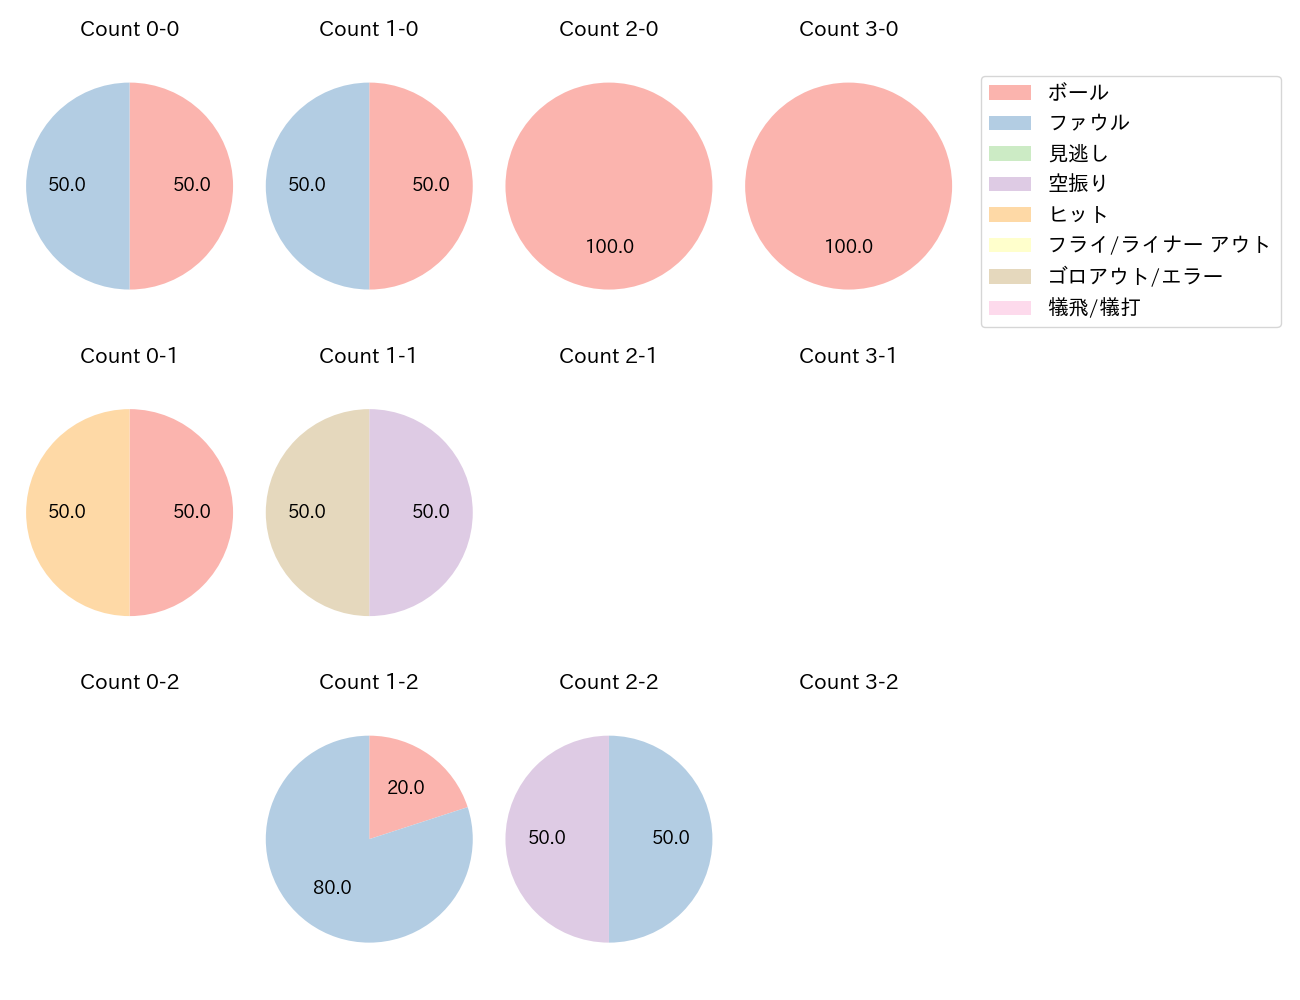 和田 恋の球数分布(2021年8月)